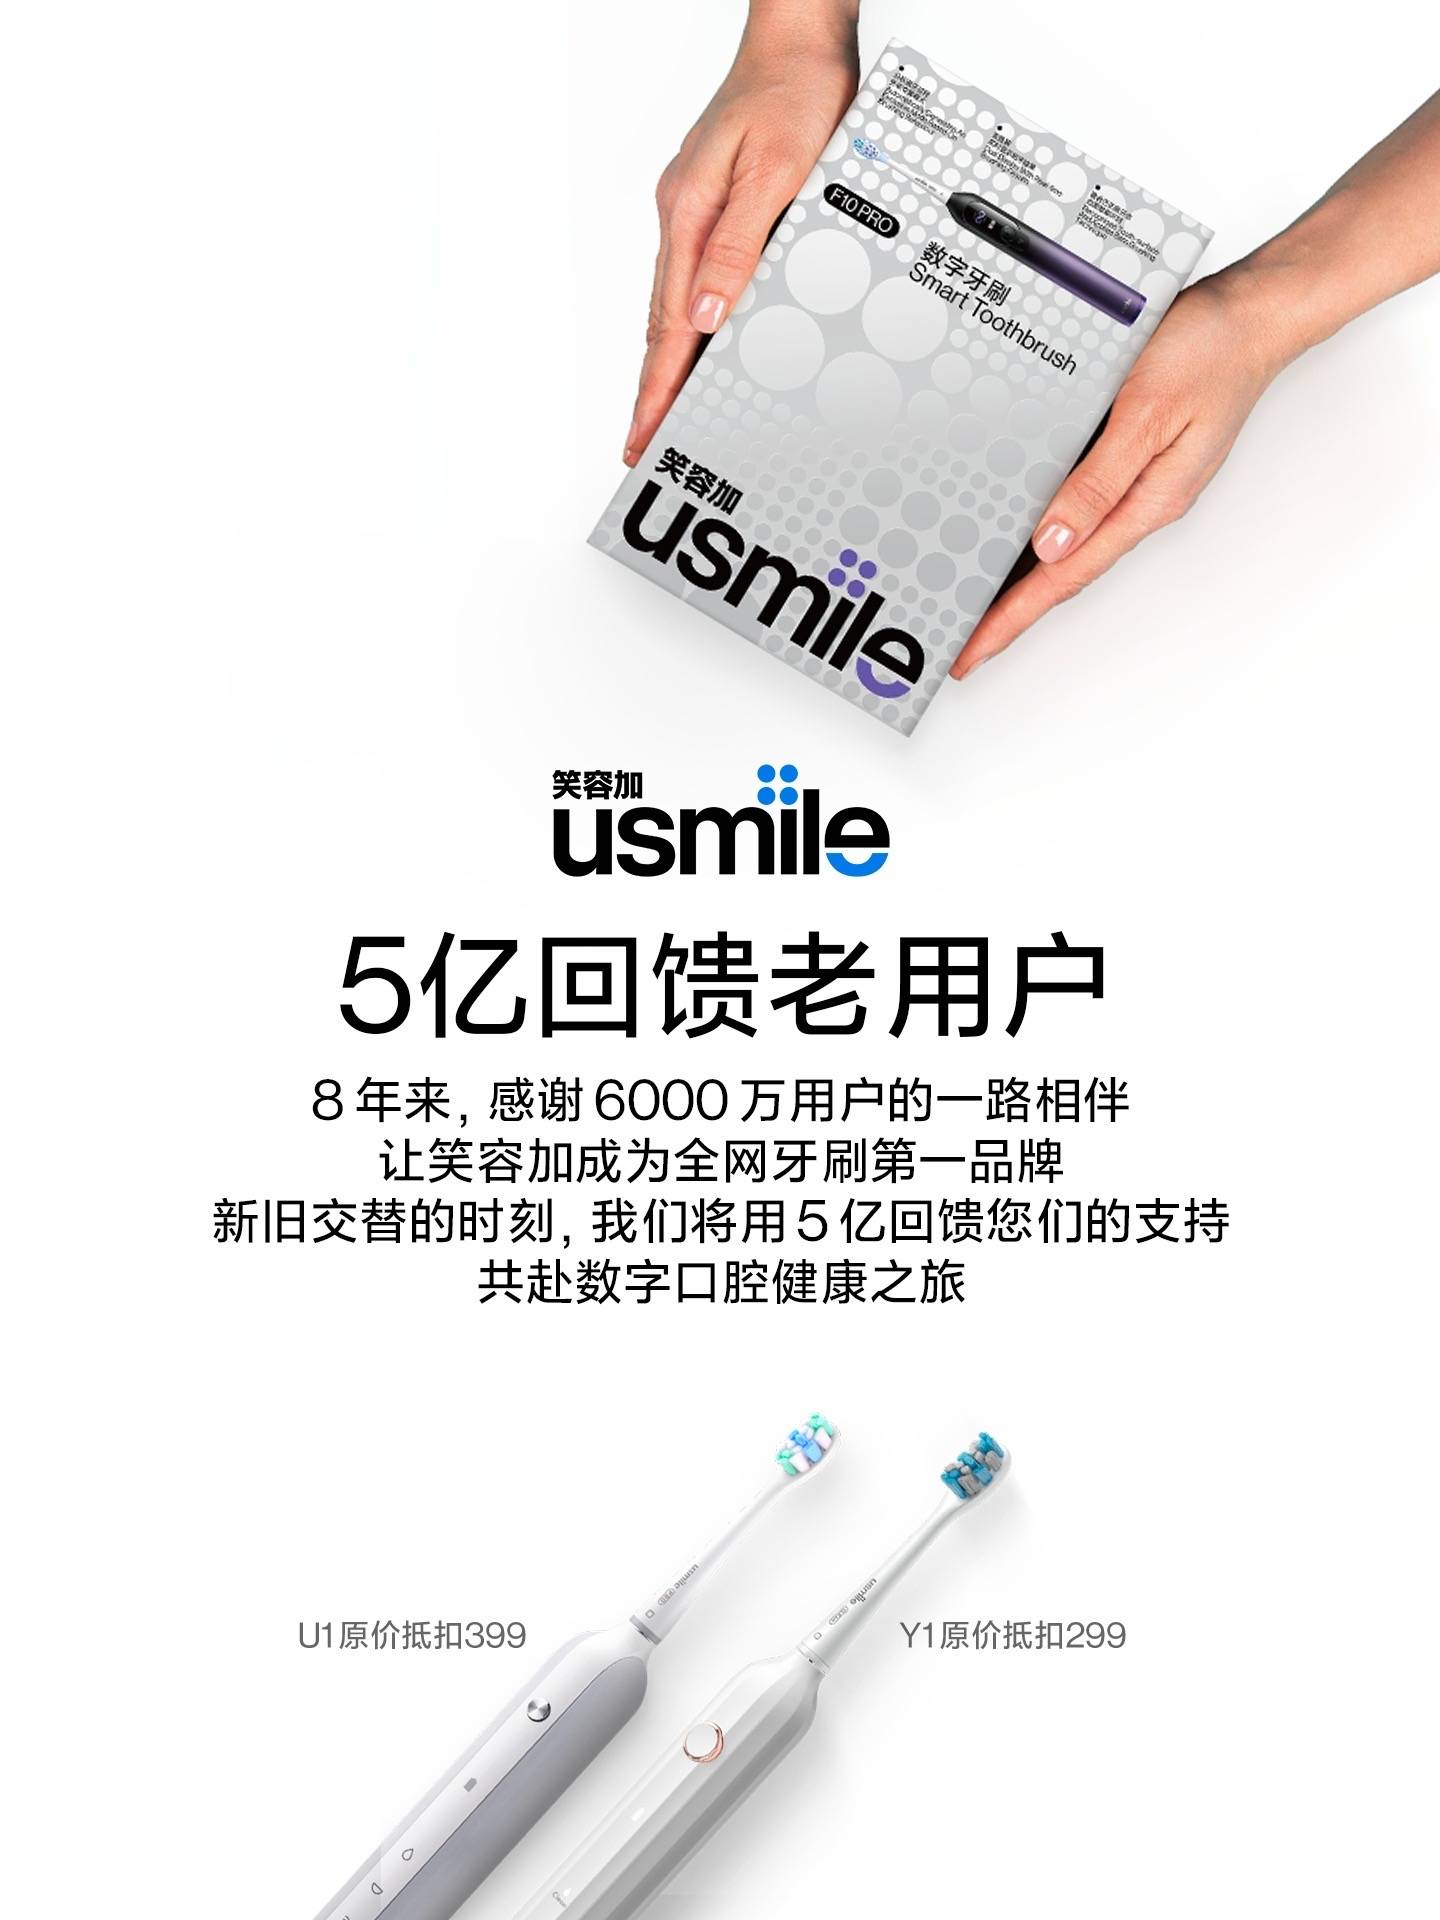 国货品牌usmile笑容加斥资5亿：感恩回馈老用户，携手共启数字牙刷时代